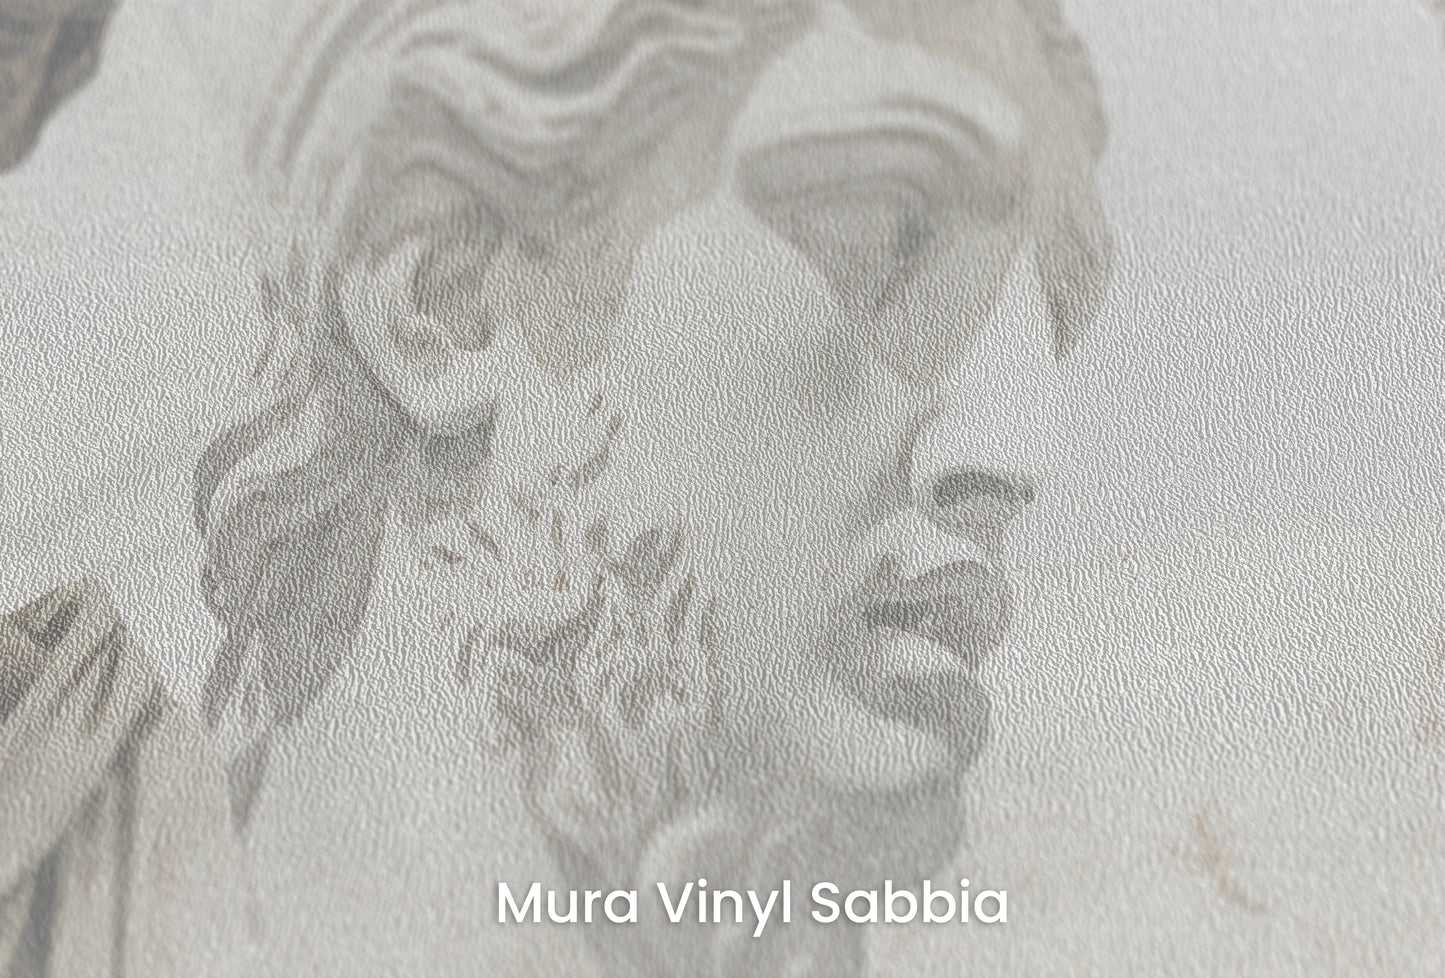 Zbliżenie na artystyczną fototapetę o nazwie Apollo's Contemplation na podłożu Mura Vinyl Sabbia struktura grubego ziarna piasku.